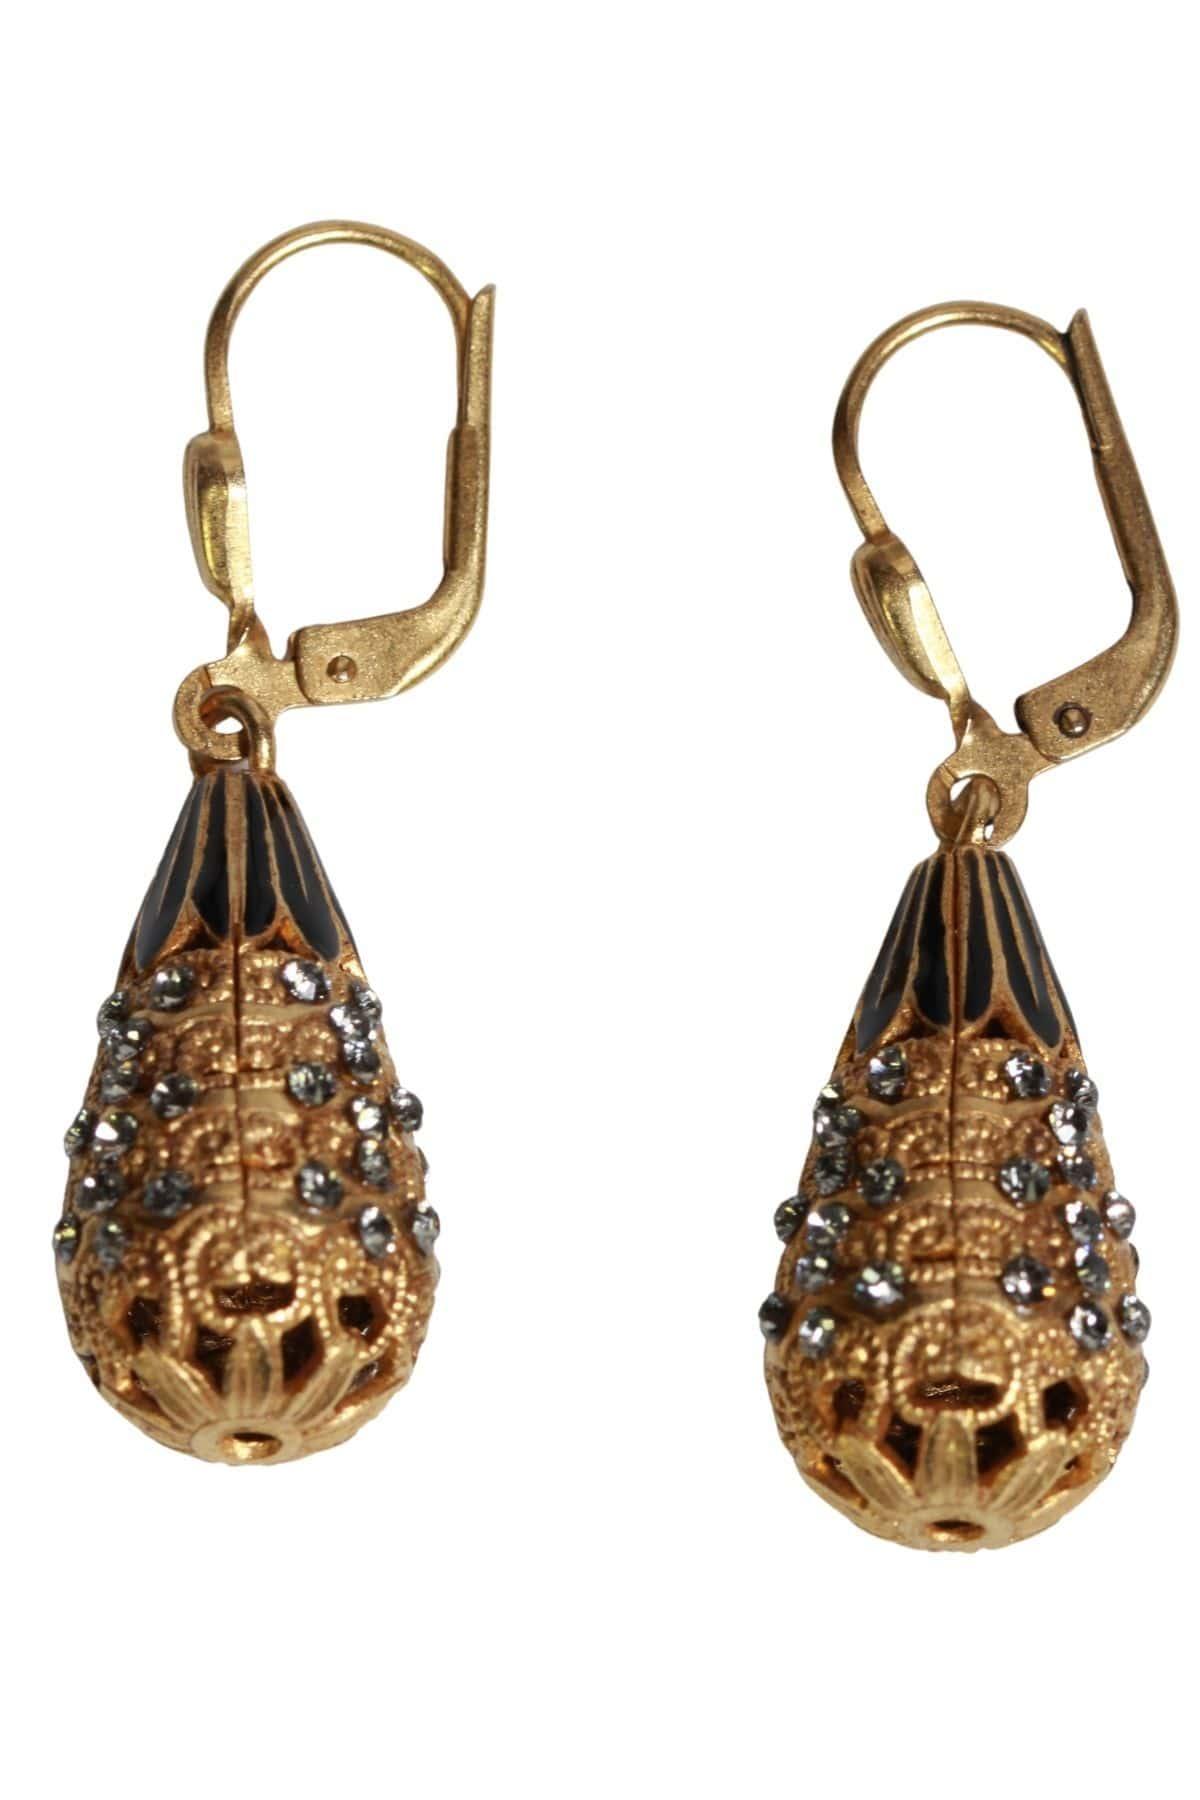 Gold filigree teardrop earrings by La Vie Parisienne